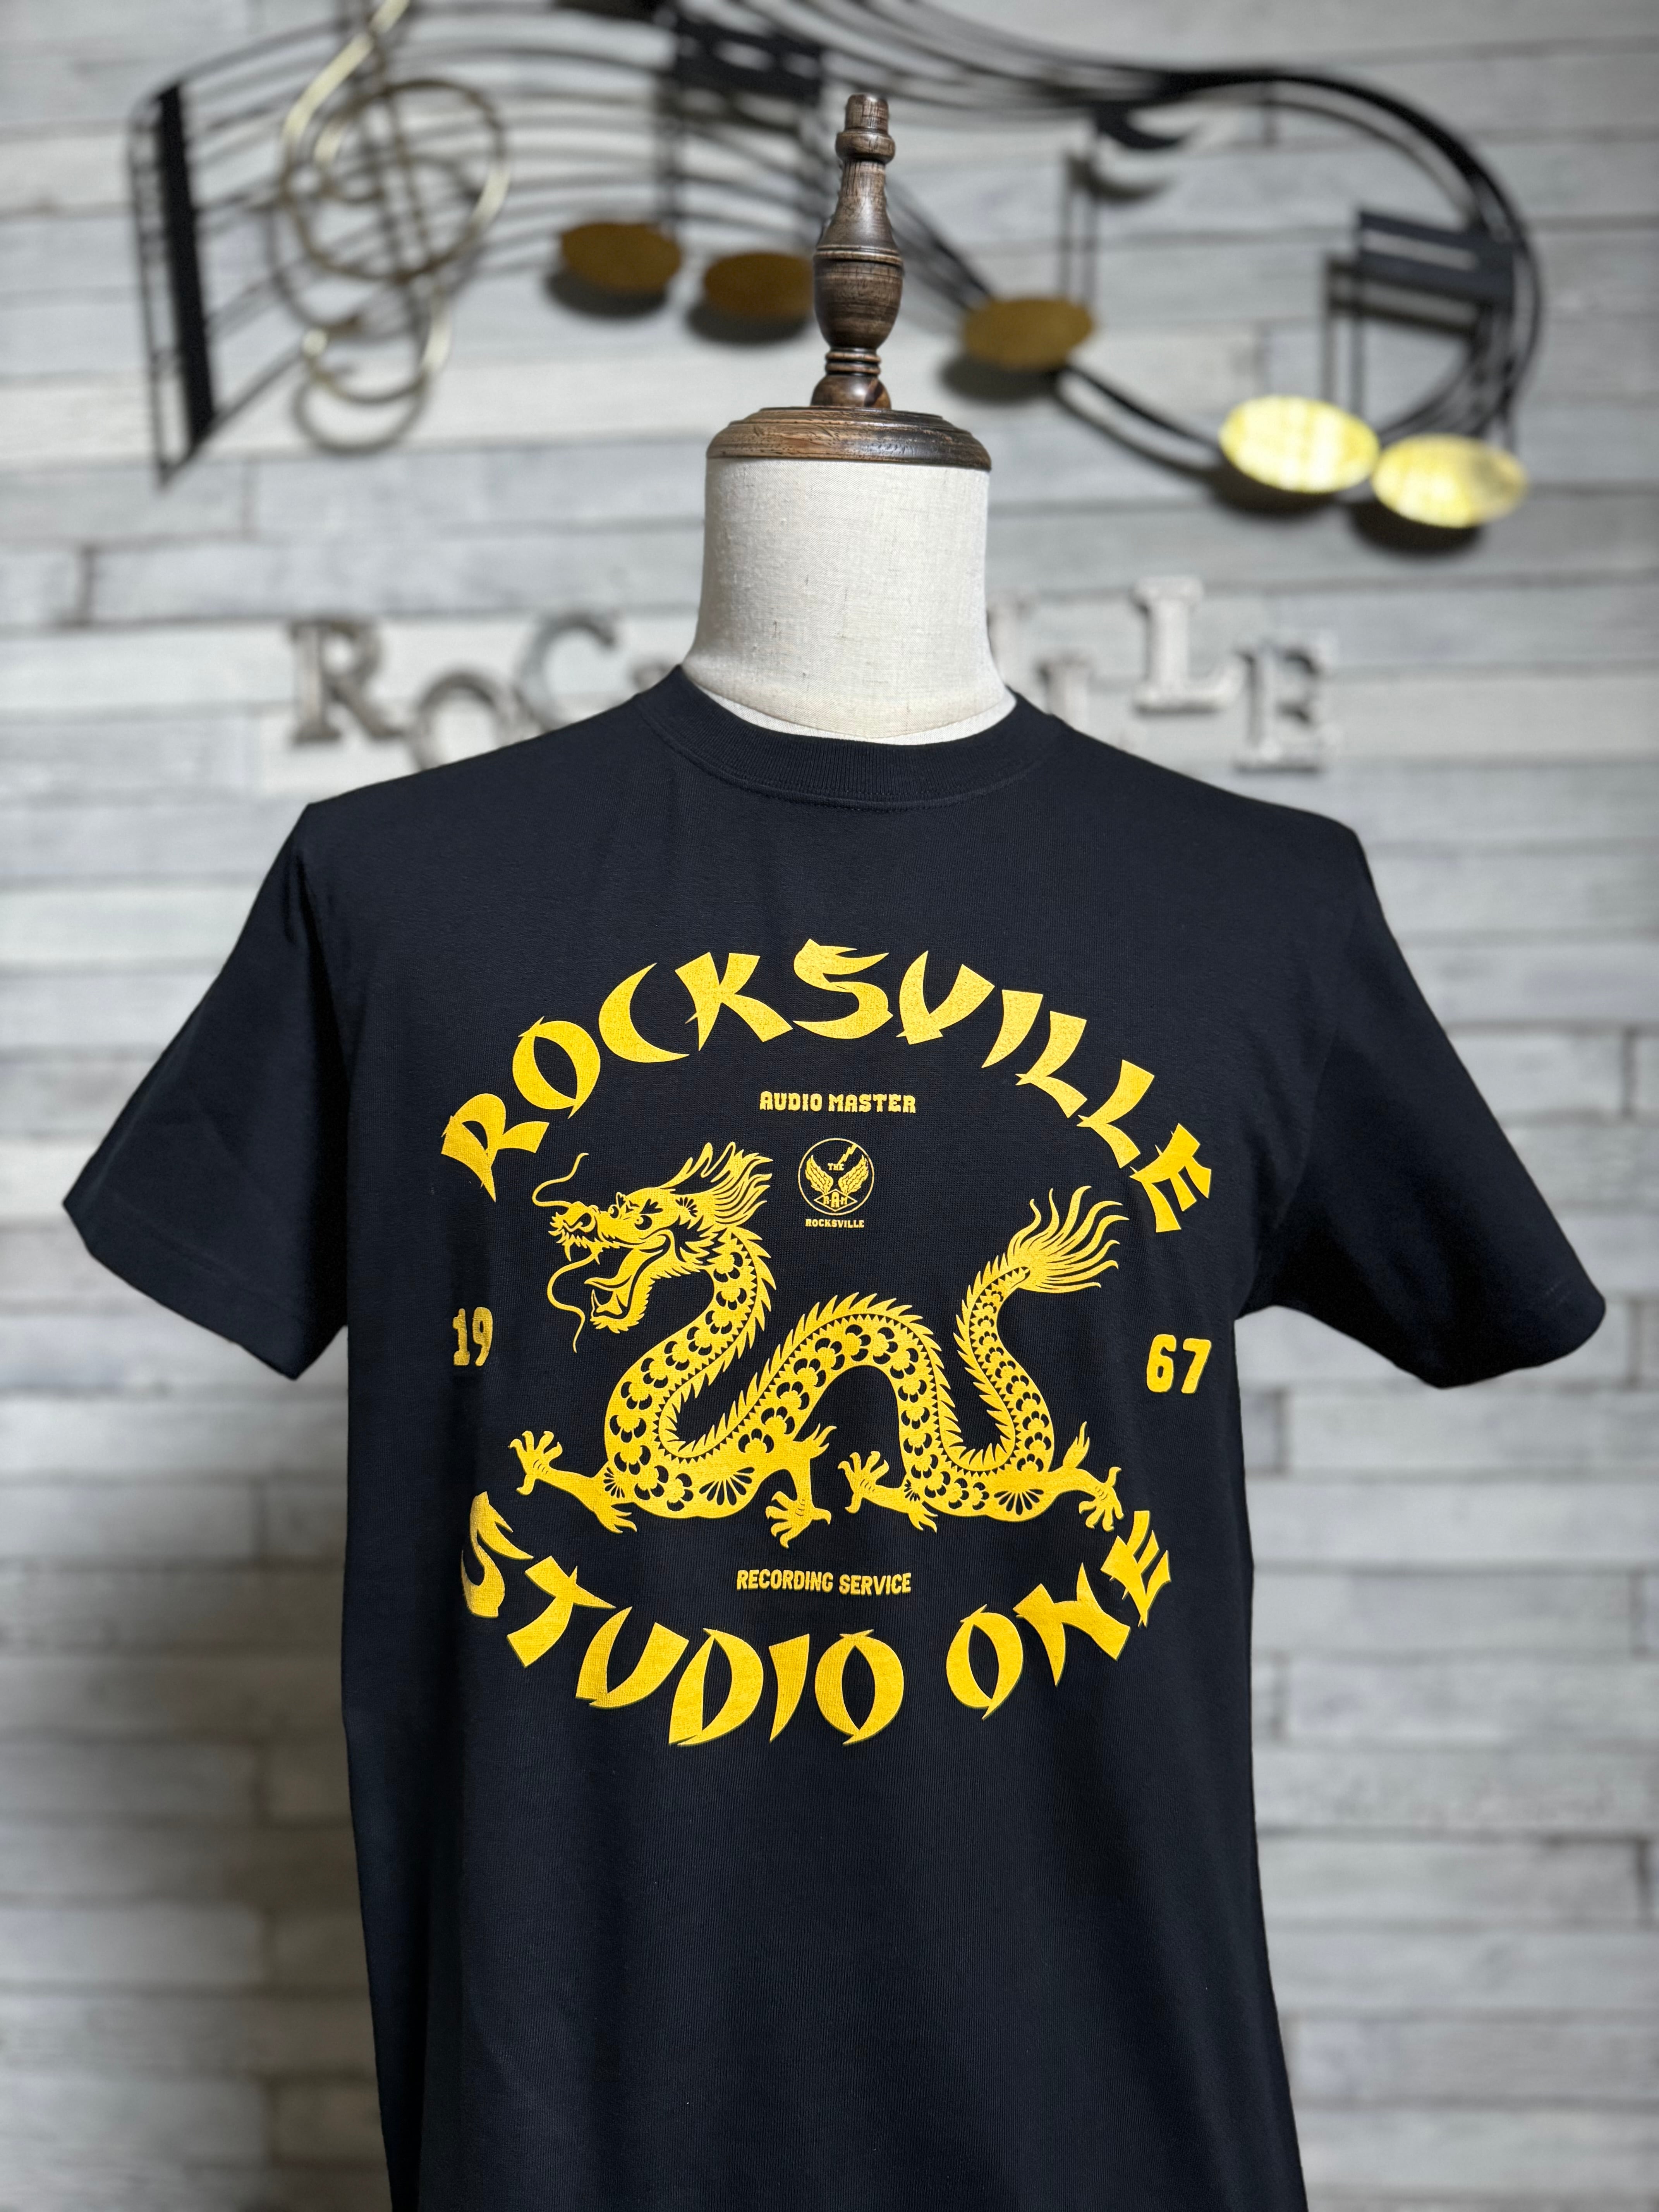 ザ・マックショウ「ビート・ザ・マックショウ」Tシャツ | ROCKSVILLE 